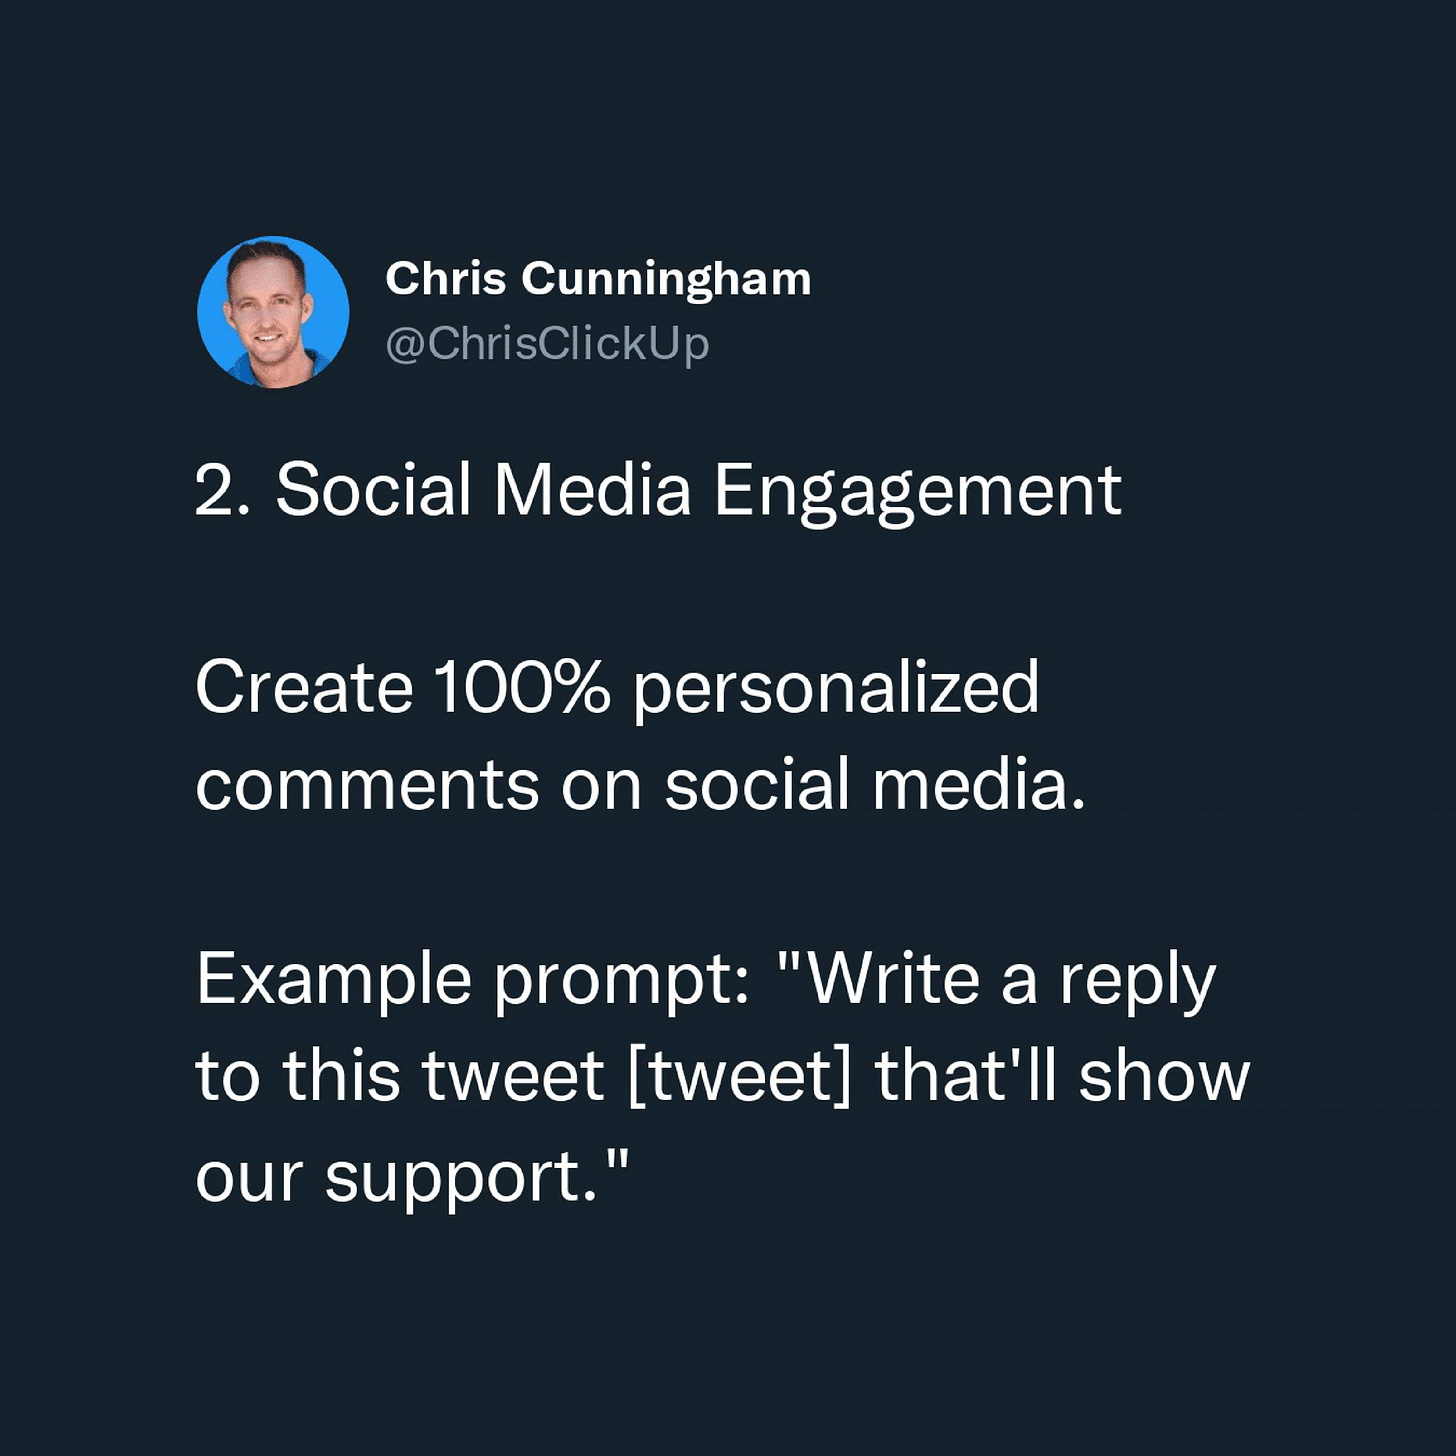 Có thể là ảnh chụp màn hình Twitter về 1 người và văn bản cho biết 'Chris Cunningham @ChrisClickUp 2. Social Media Engagement Create 100% personalized comments on social media. Example prompt: "Write a reply to this tweet [tweet] that'll show our support."'